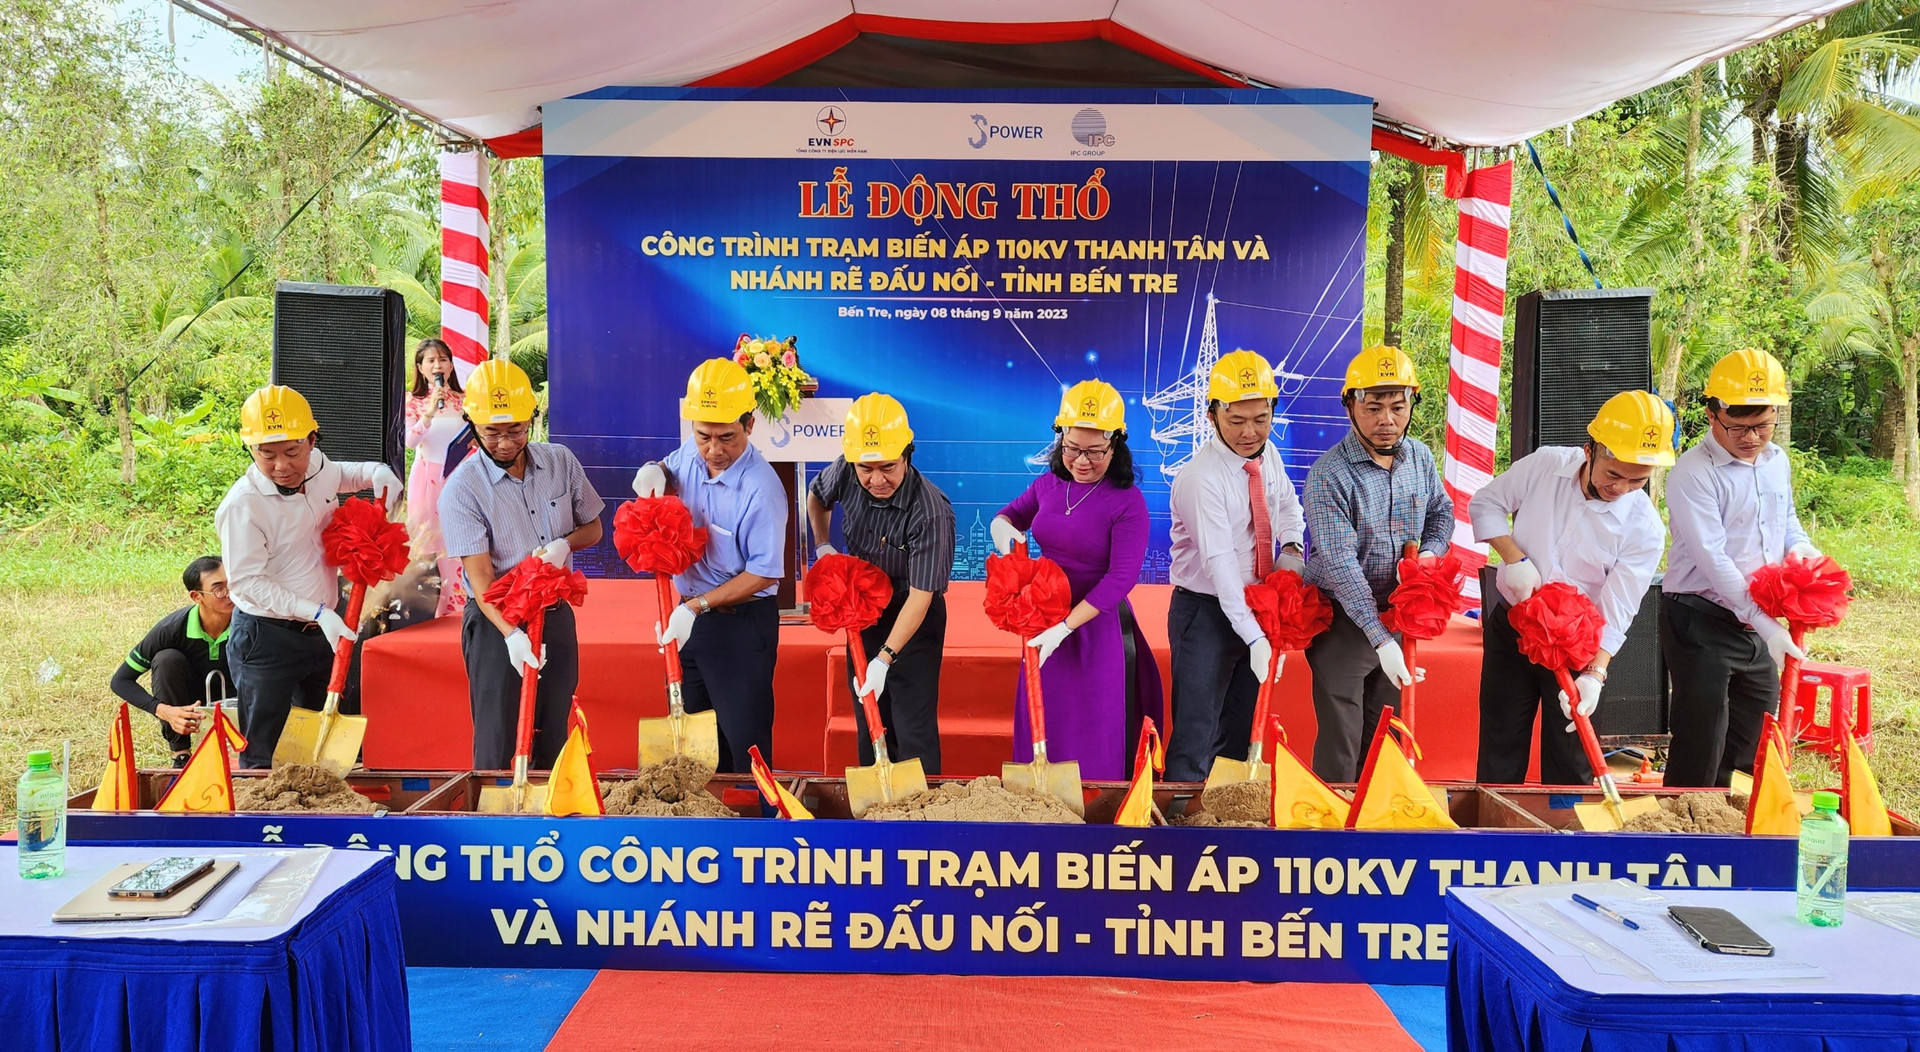 Đại diện đơn vị ngành Điện, chính quyền địa phương và đơn vị thi công thực hiện nghi thức động thổ công trình trạm biến áp 110kV Thanh Tân và nhánh rẽ đấu nối.